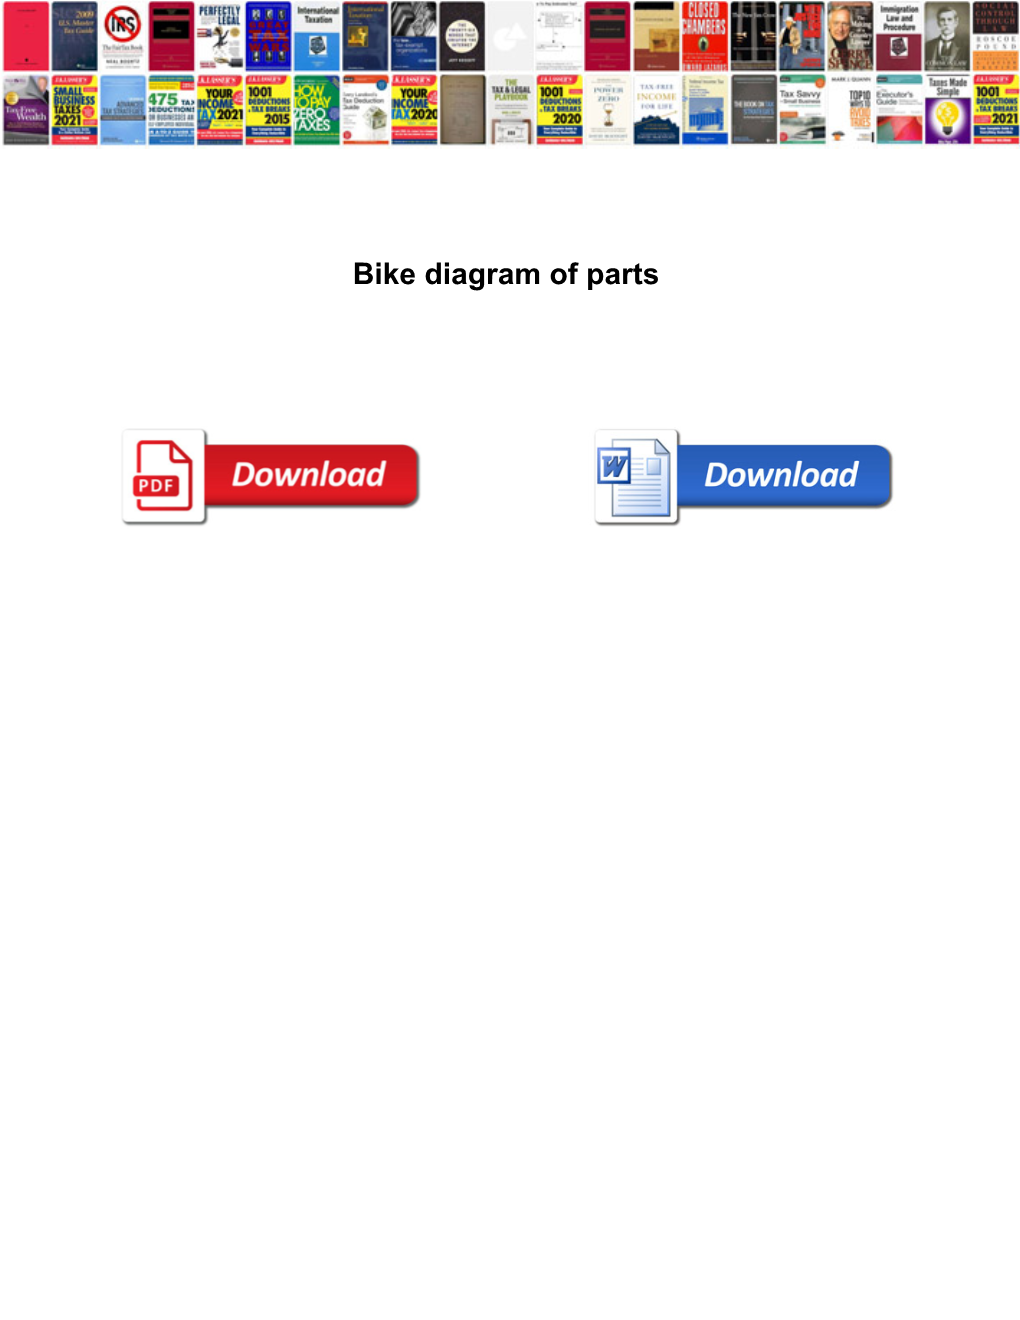 Bike Diagram of Parts